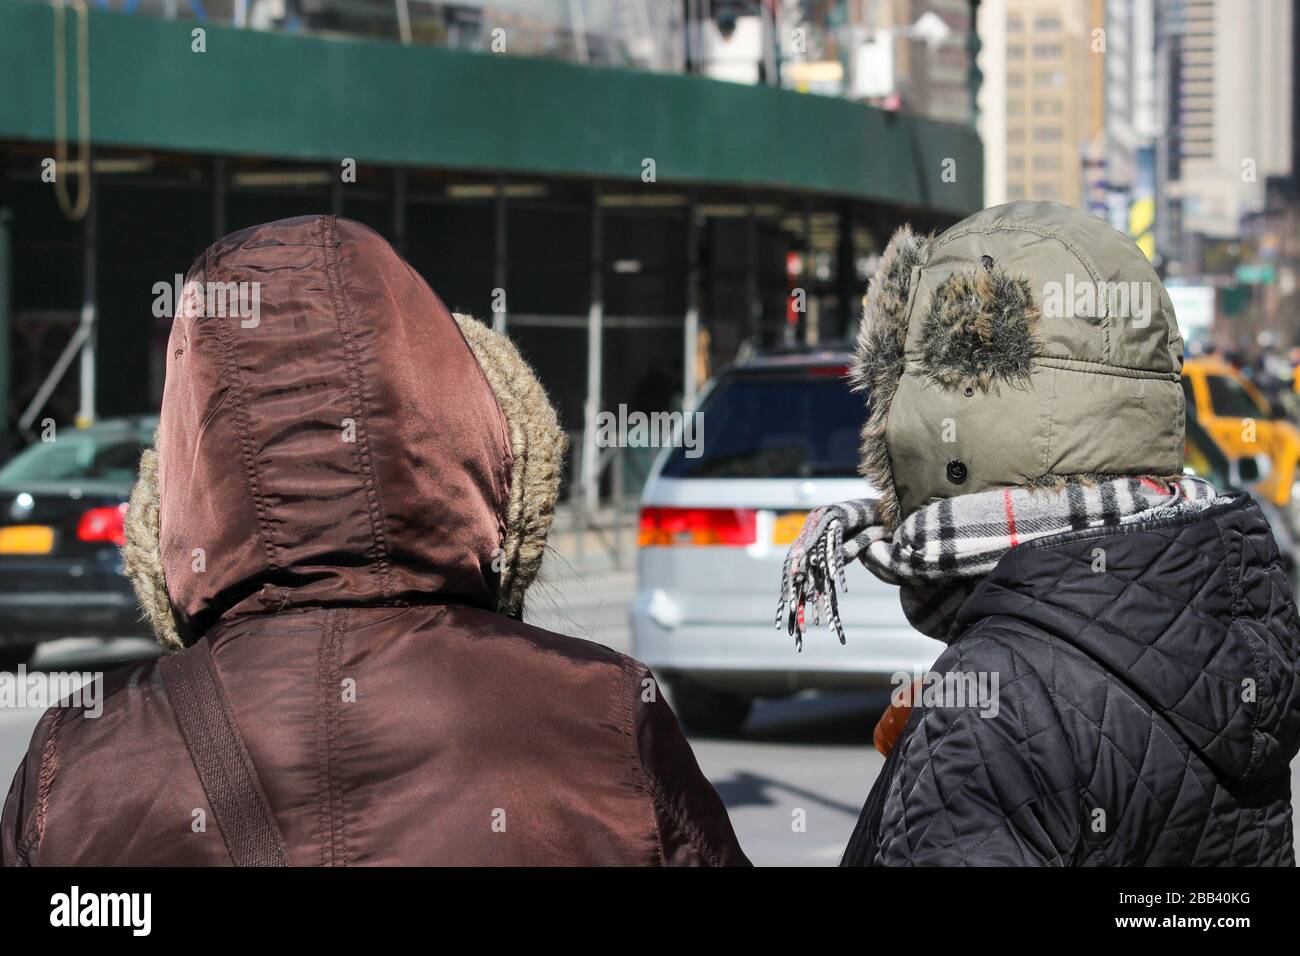 Les New-Yorkais portent des vêtements d'hiver lors d'une journée froide de février à Manhattan, New York City, États-Unis d'Amérique Banque D'Images